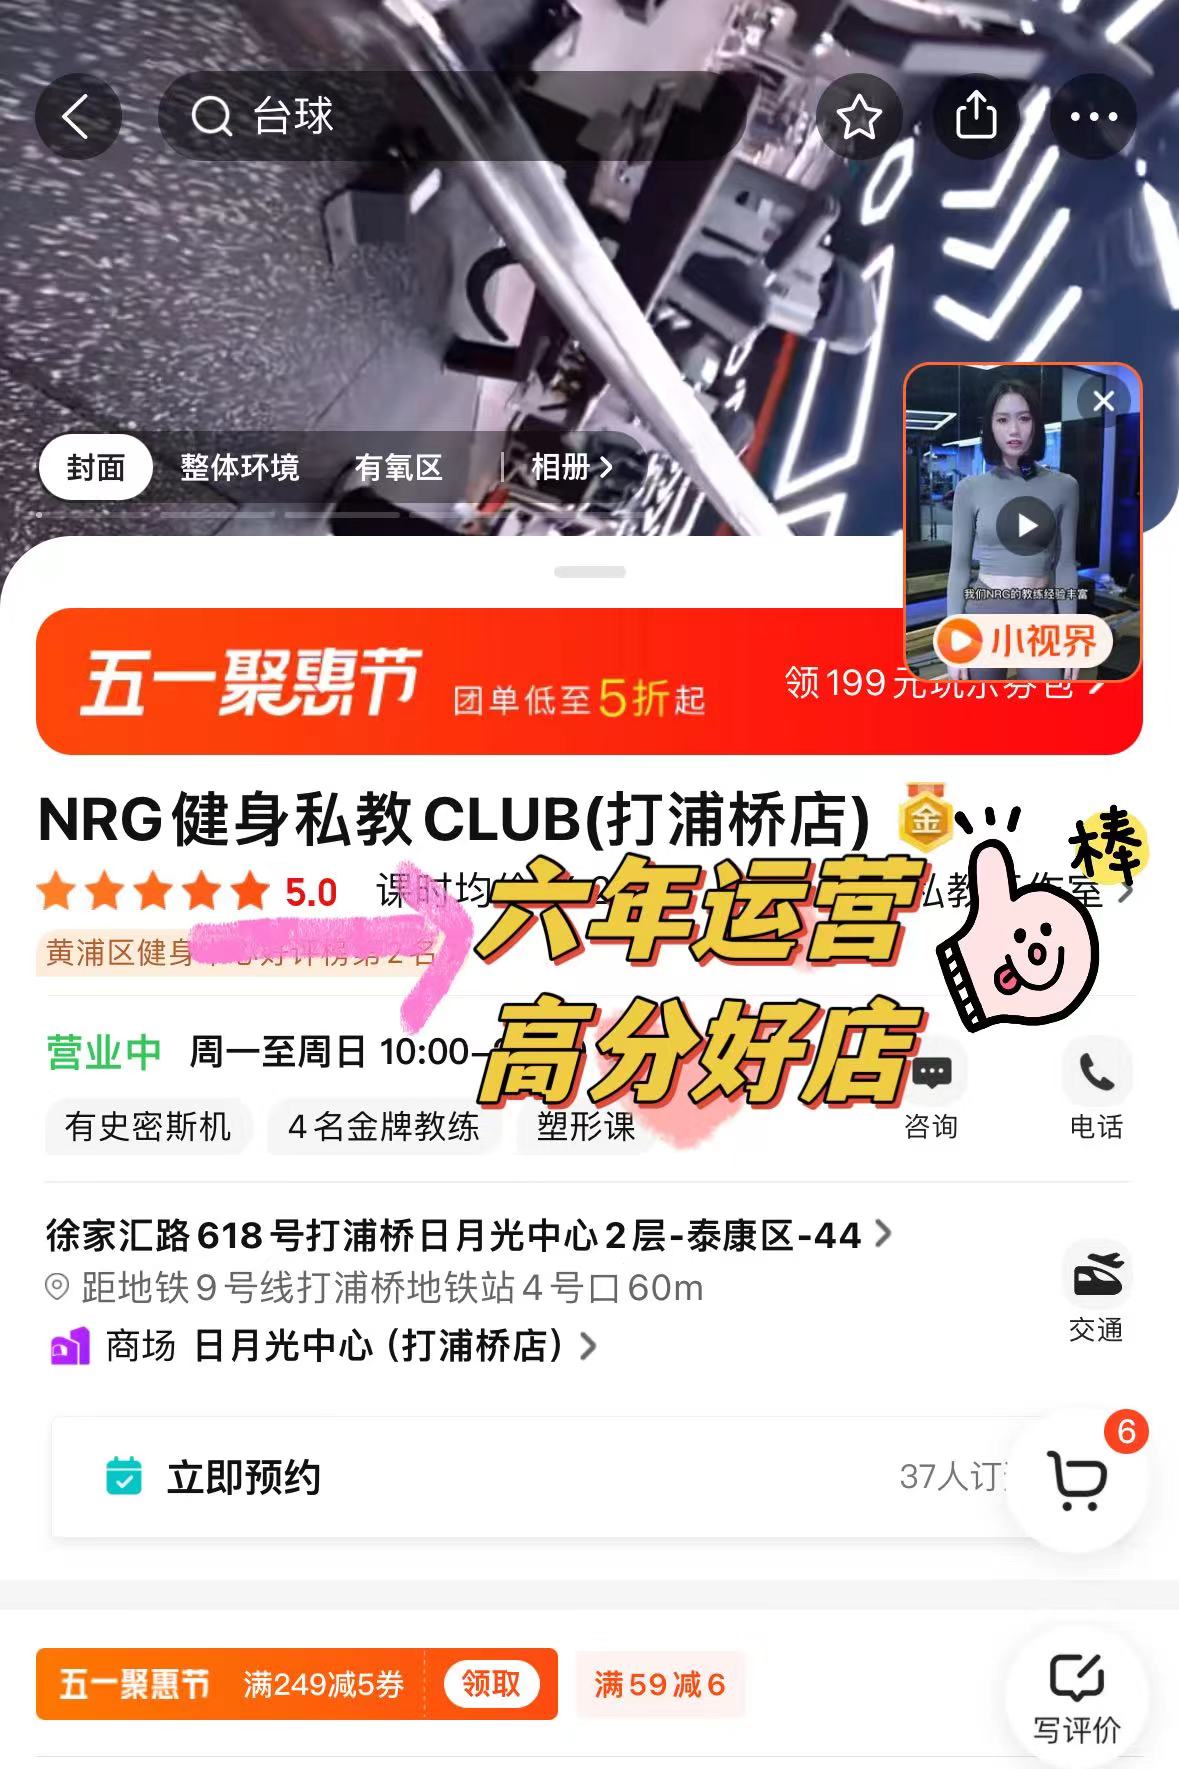 上海NRG私教CLUB大众点评